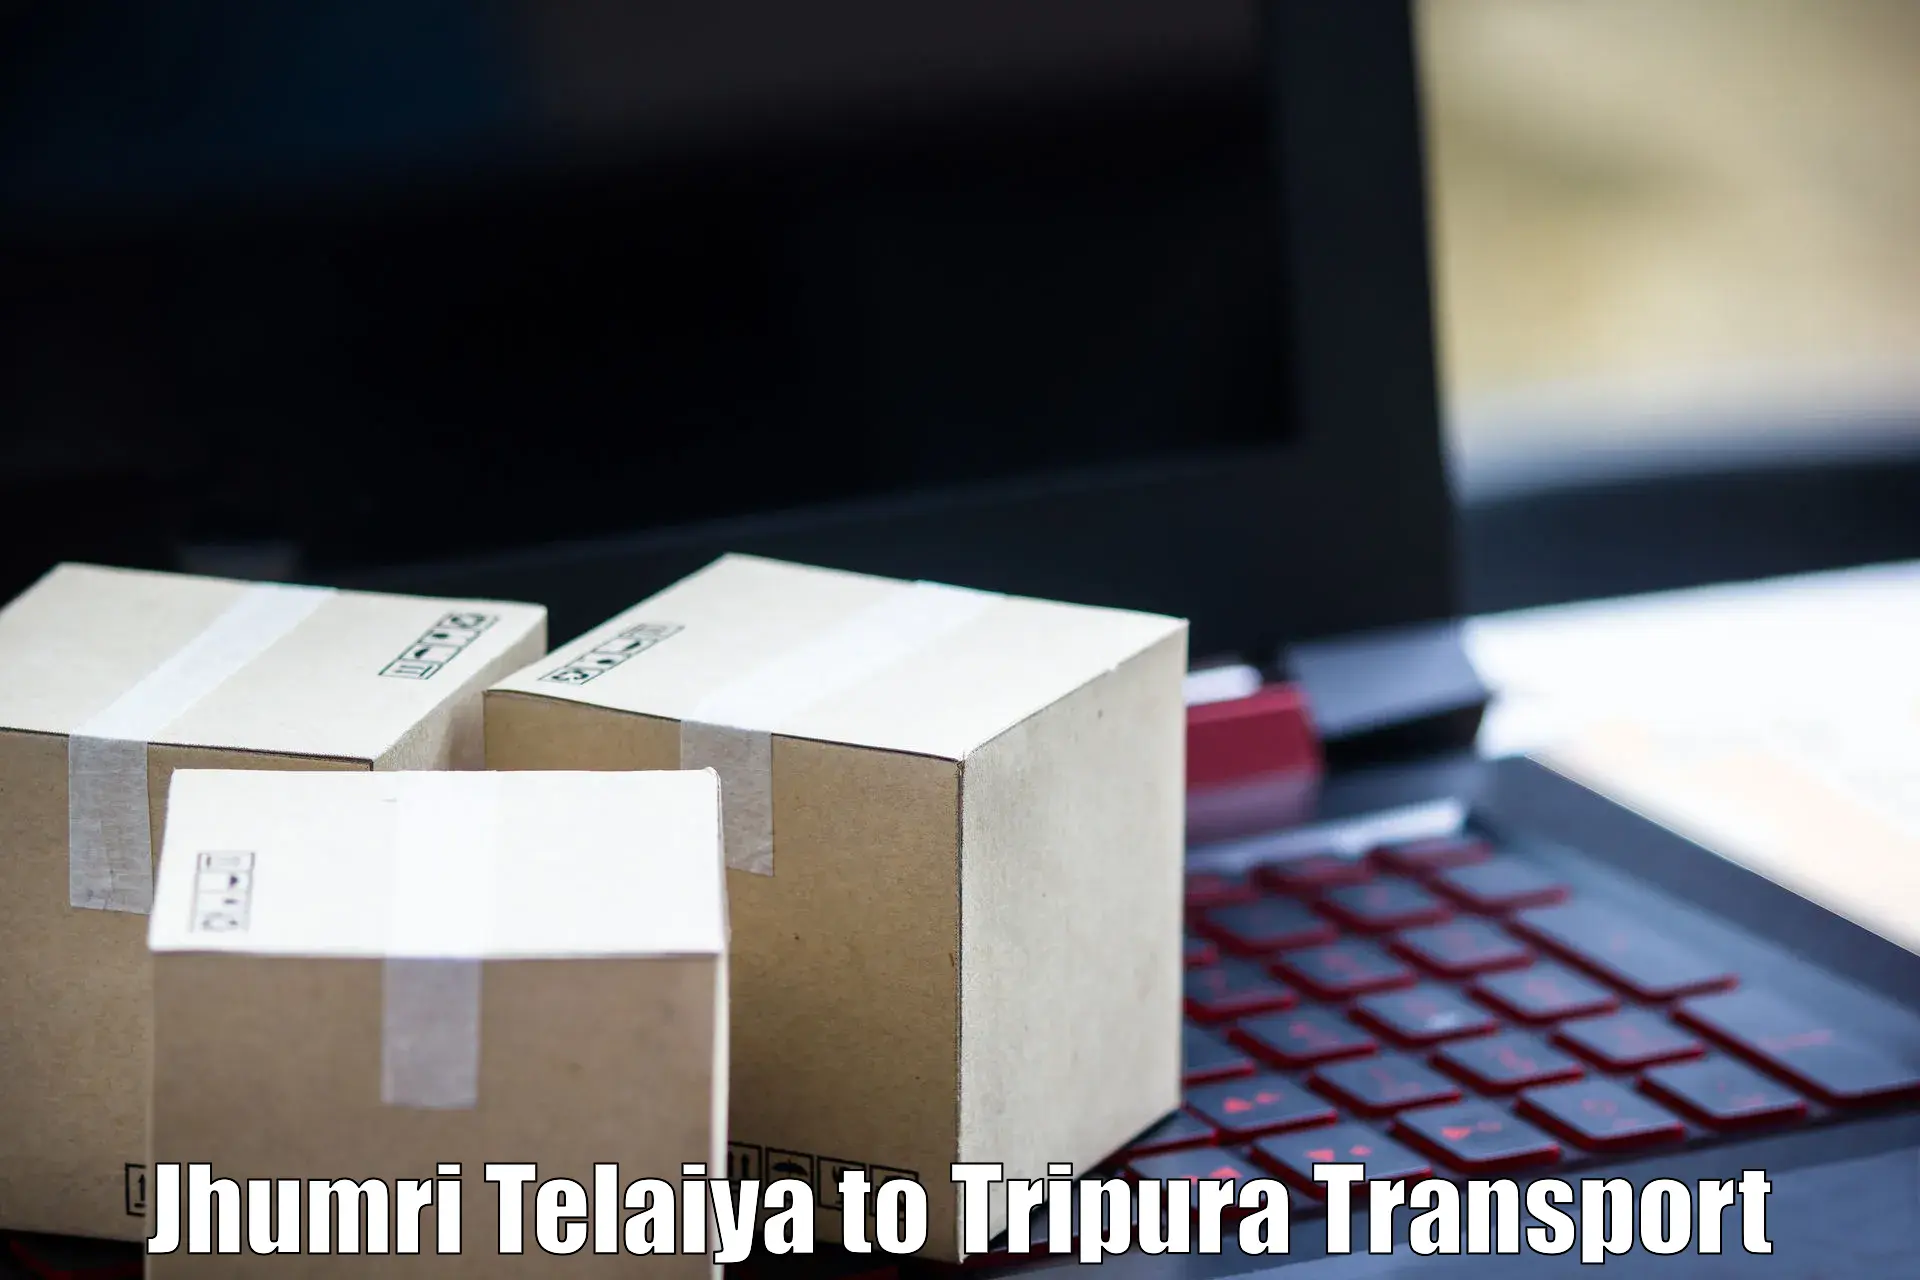 Transportation solution services Jhumri Telaiya to Kamalpur